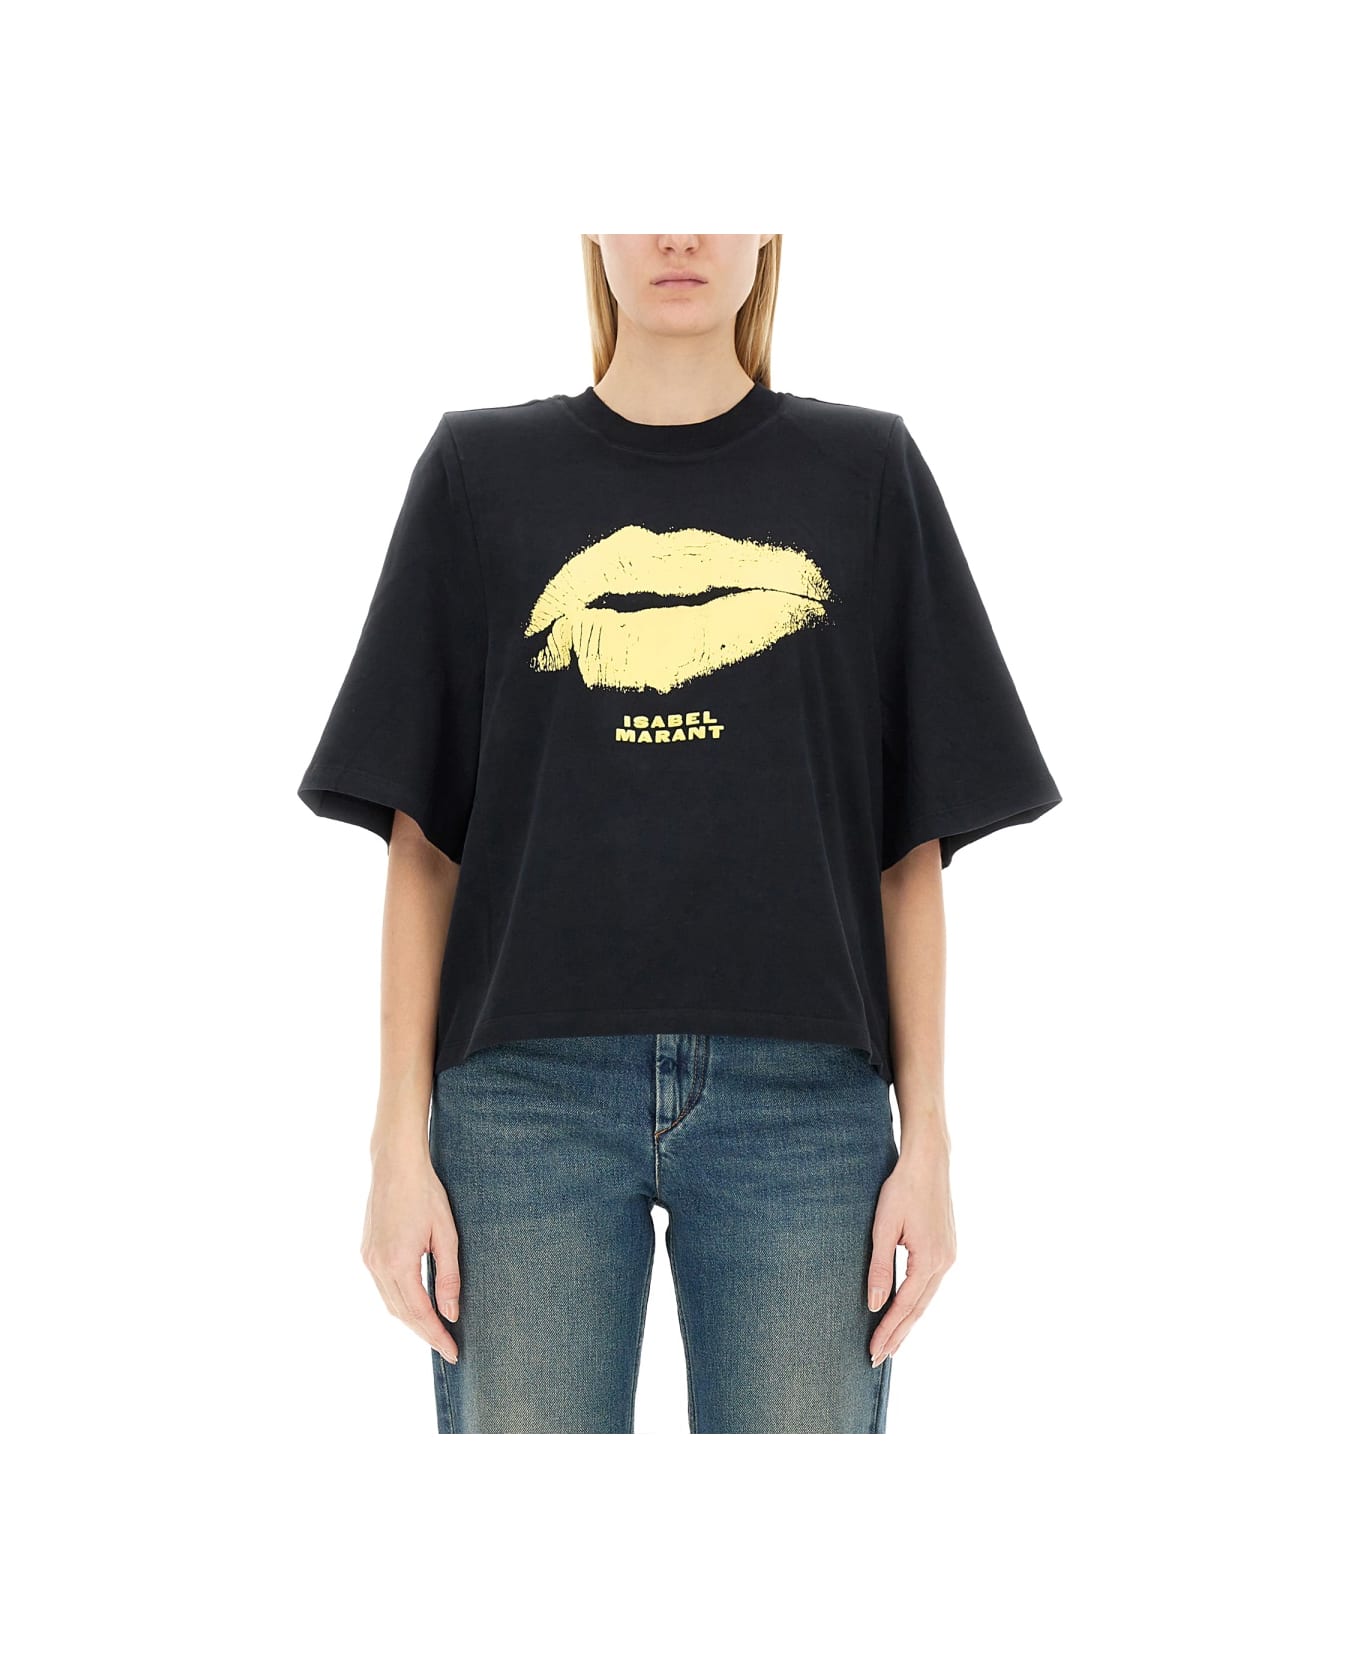 Isabel Marant T-shirt 'ben' - NERO Tシャツ